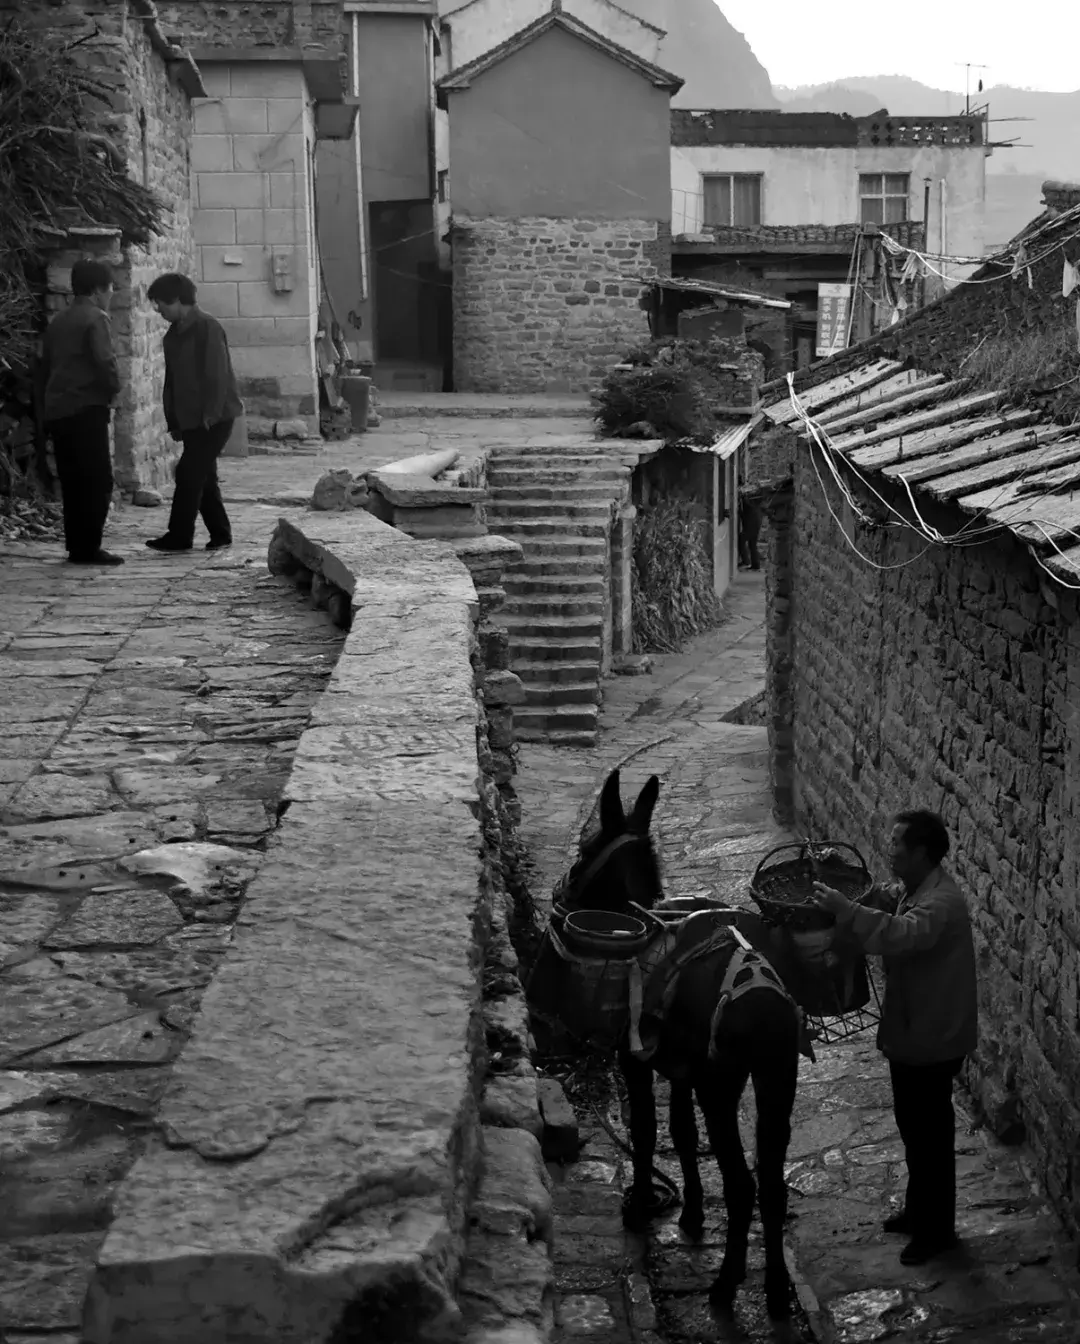 王金庄拍摄游记之一 【驴背上的悠悠岁月】-中关村在线摄影论坛